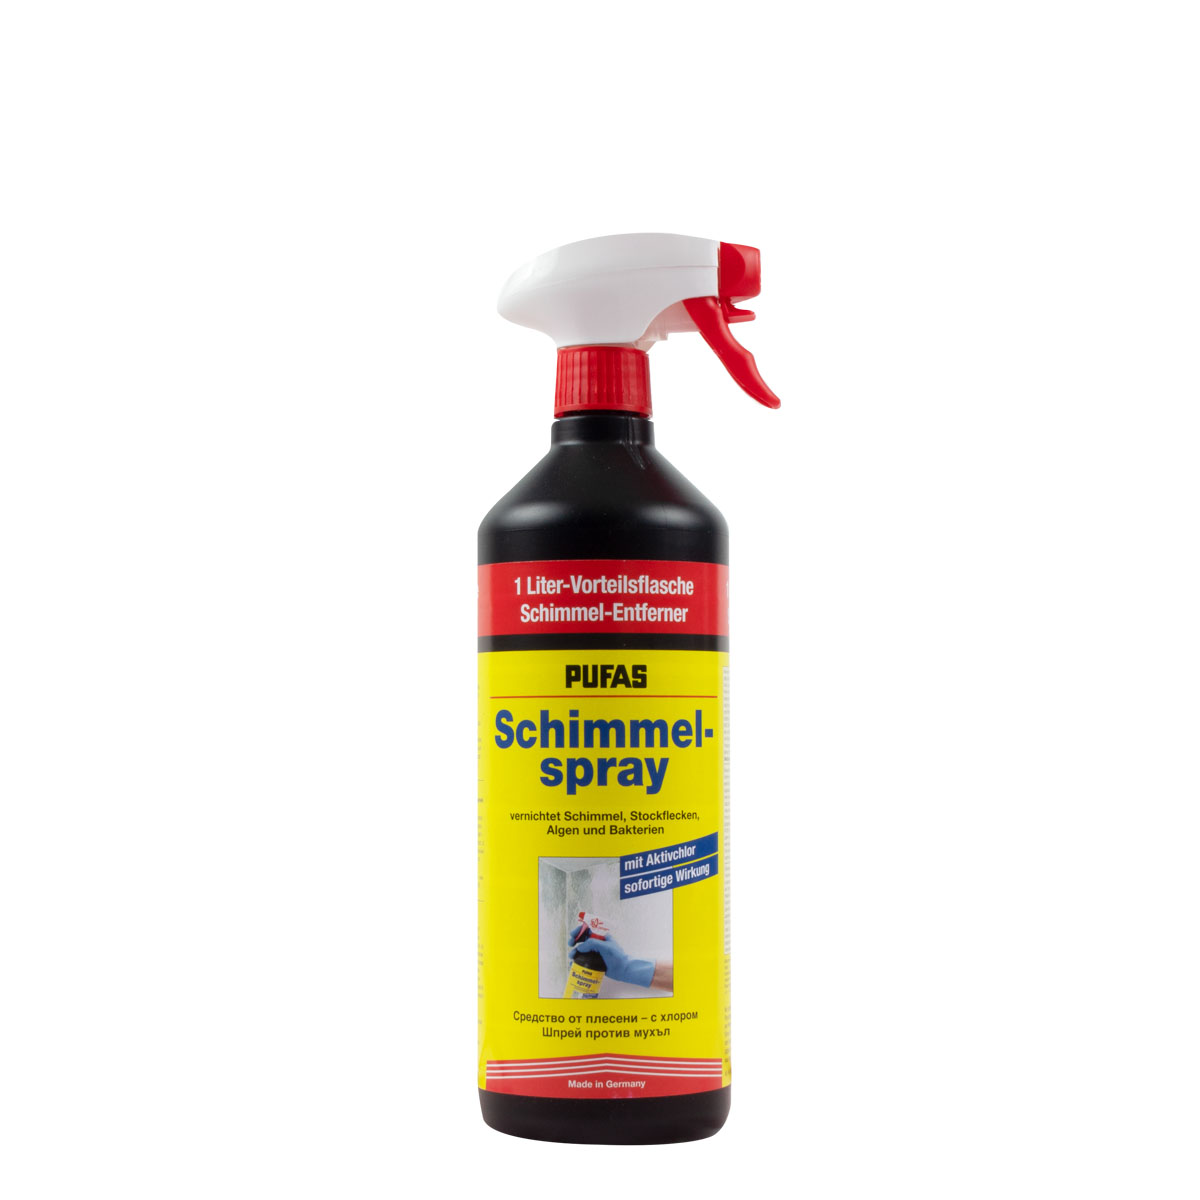 Pufas Schimmel-Spray 1L, Schimmelentferner mit Aktivchlor, Schimmelex